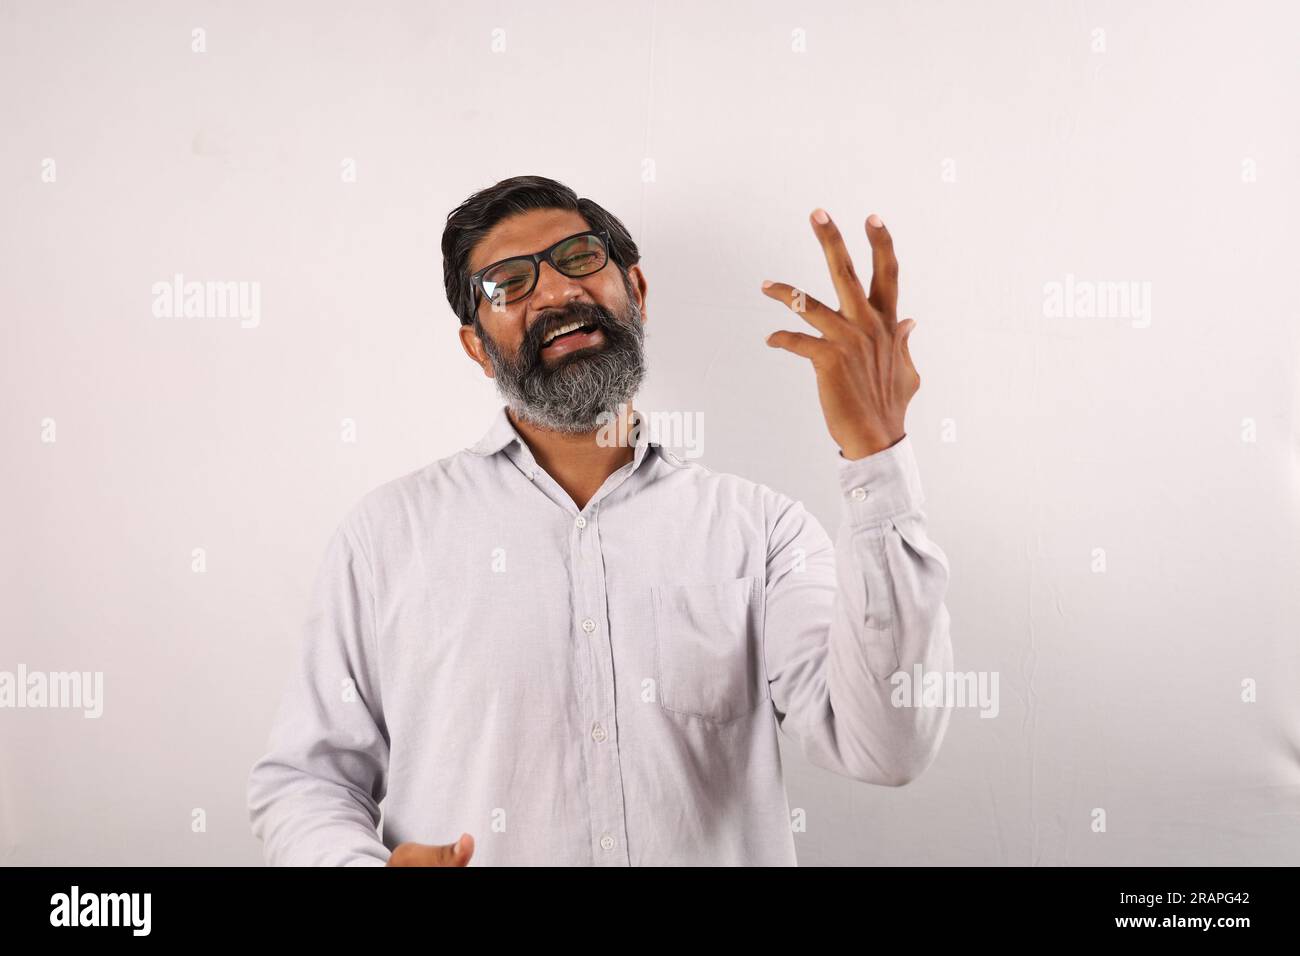 Ritratto di un uomo barbato indiano che indossa una camicia. Espressioni funky che ritraggono il senso di realizzazione e di realizzazione. Sentirsi fieri di eseguire le cose. Foto Stock